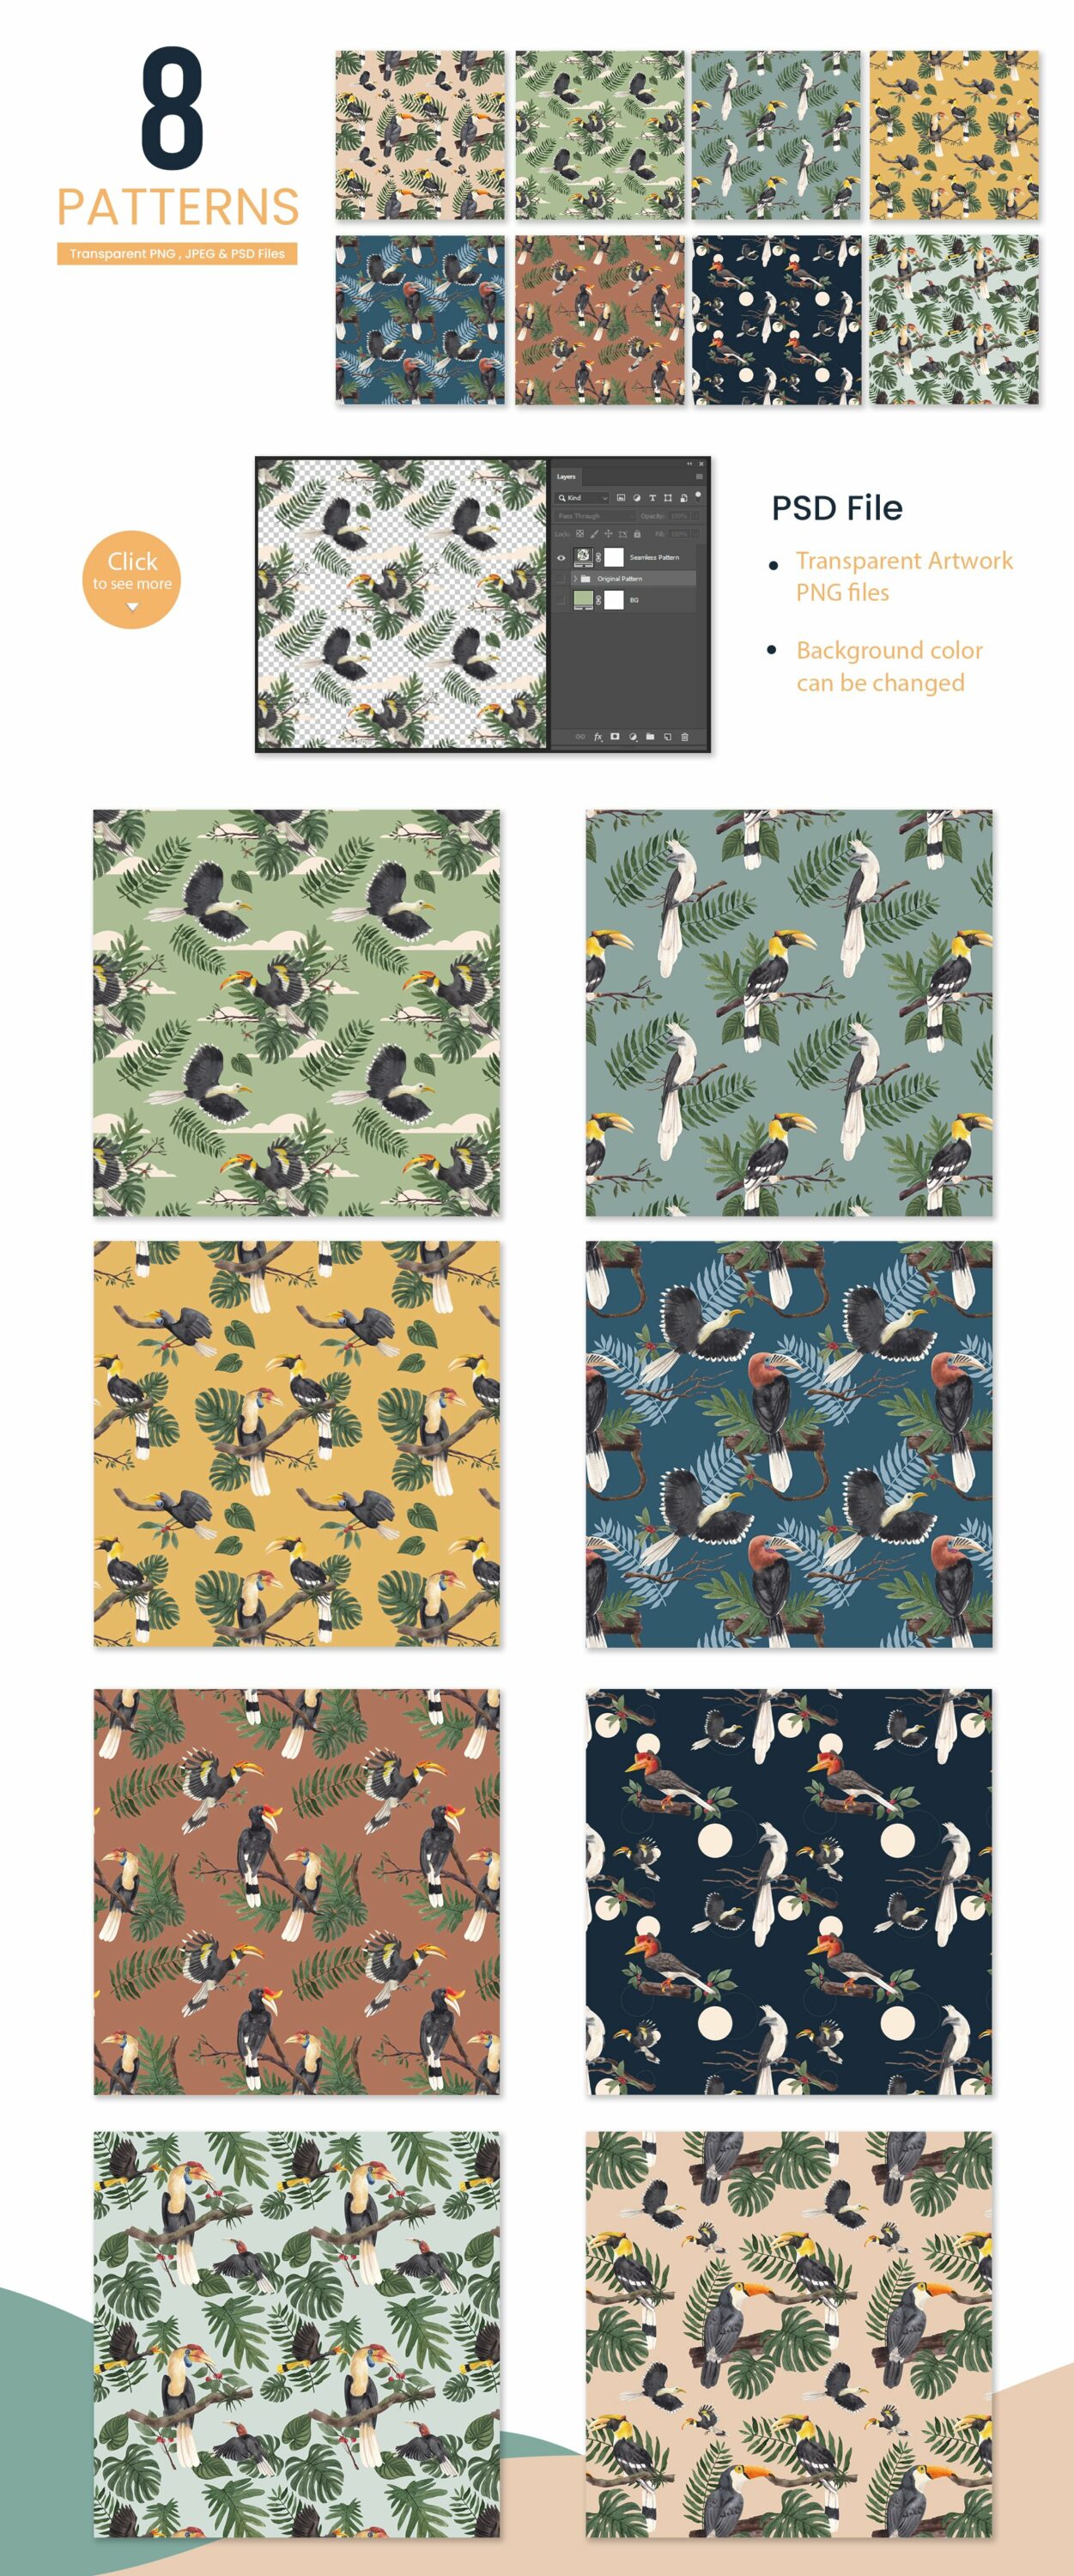 Hornbills pattern for you.